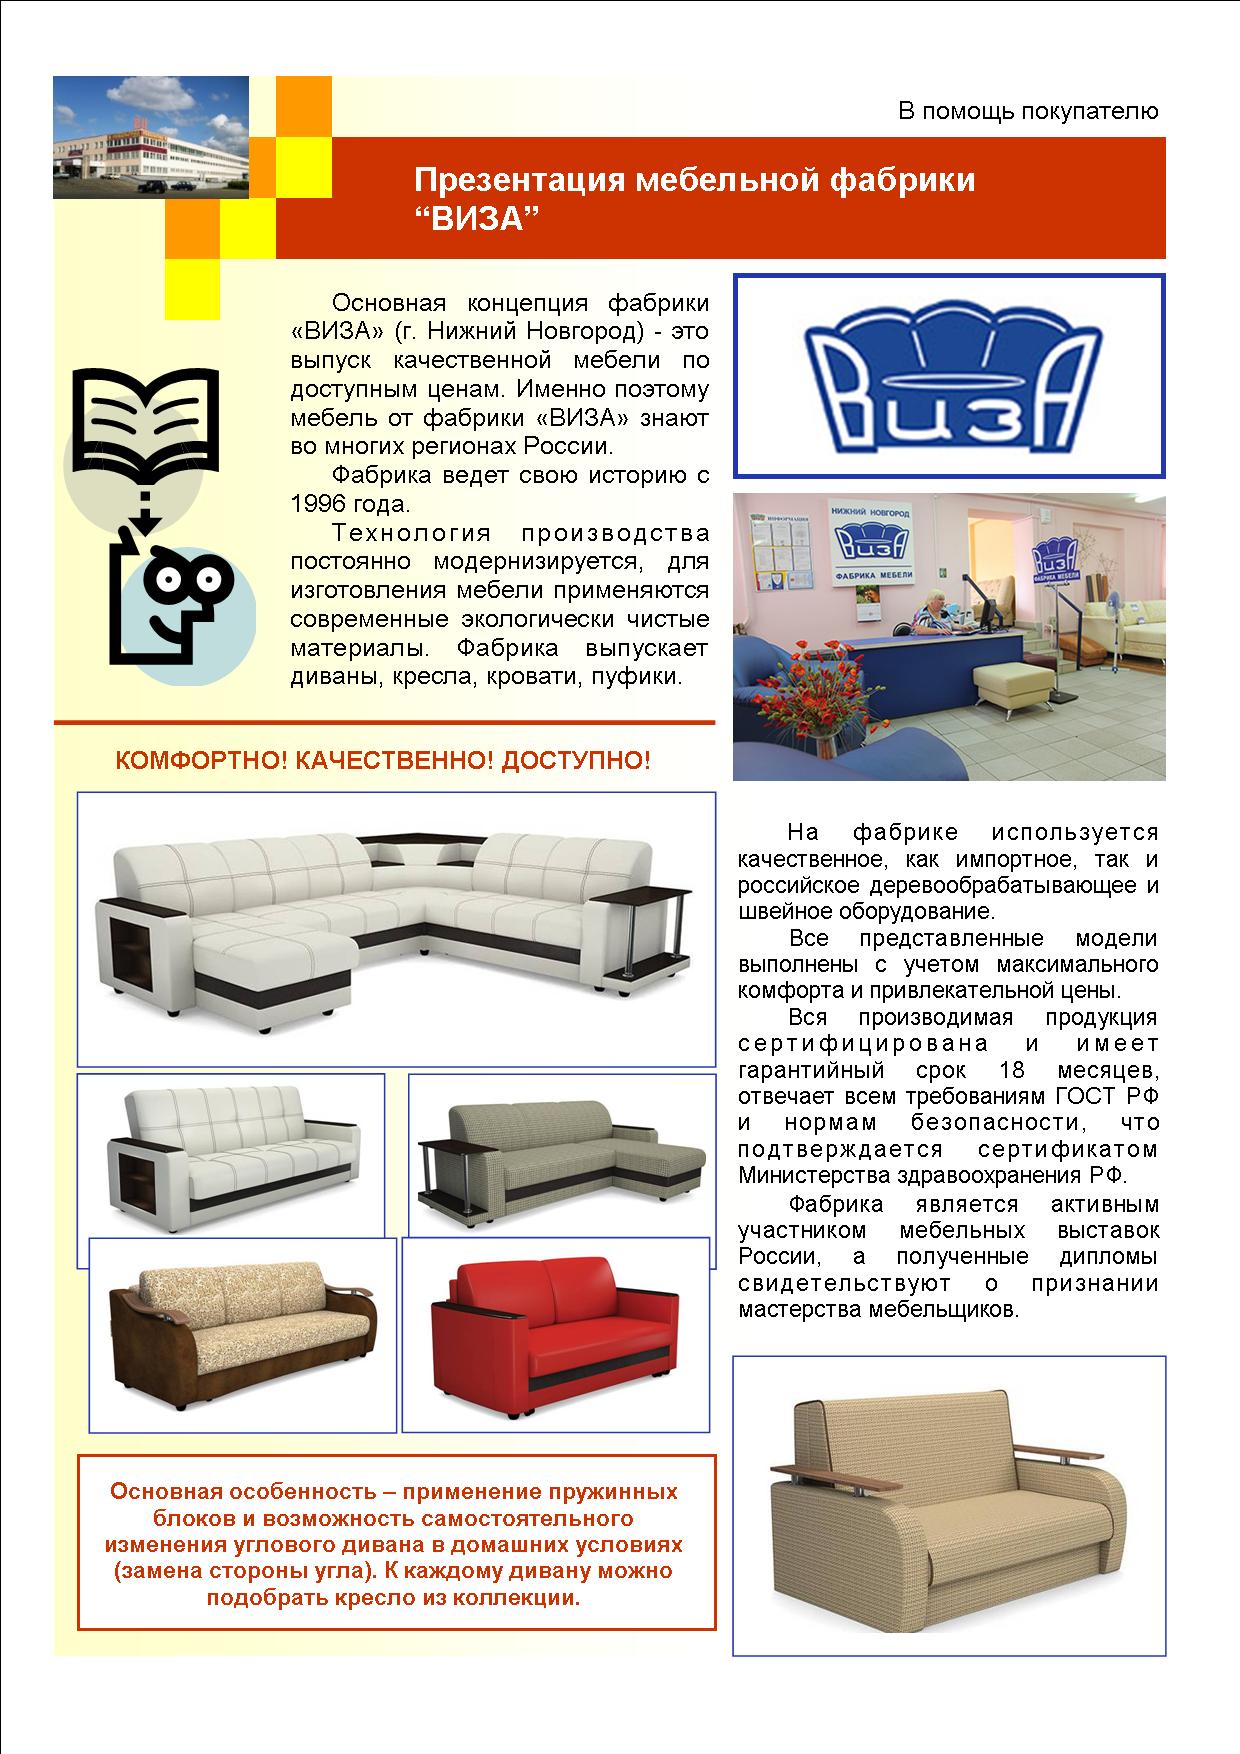 Производство мебели в россии список